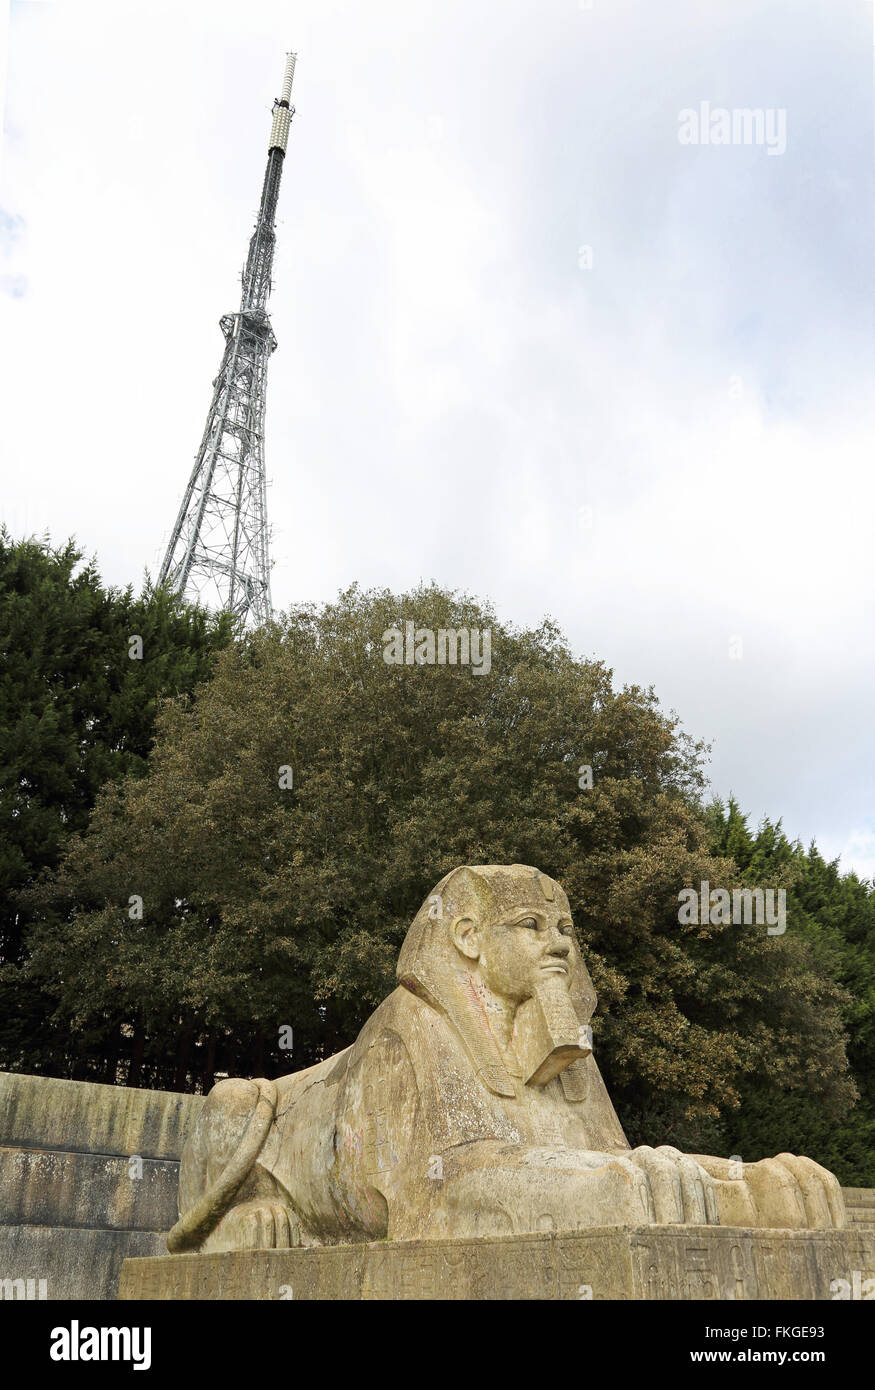 Un sphinx de pierre à Crystal Palace Park, Londres du sud présente le tour de l'émetteur de télévision de la BBC dans l'arrière-plan Banque D'Images